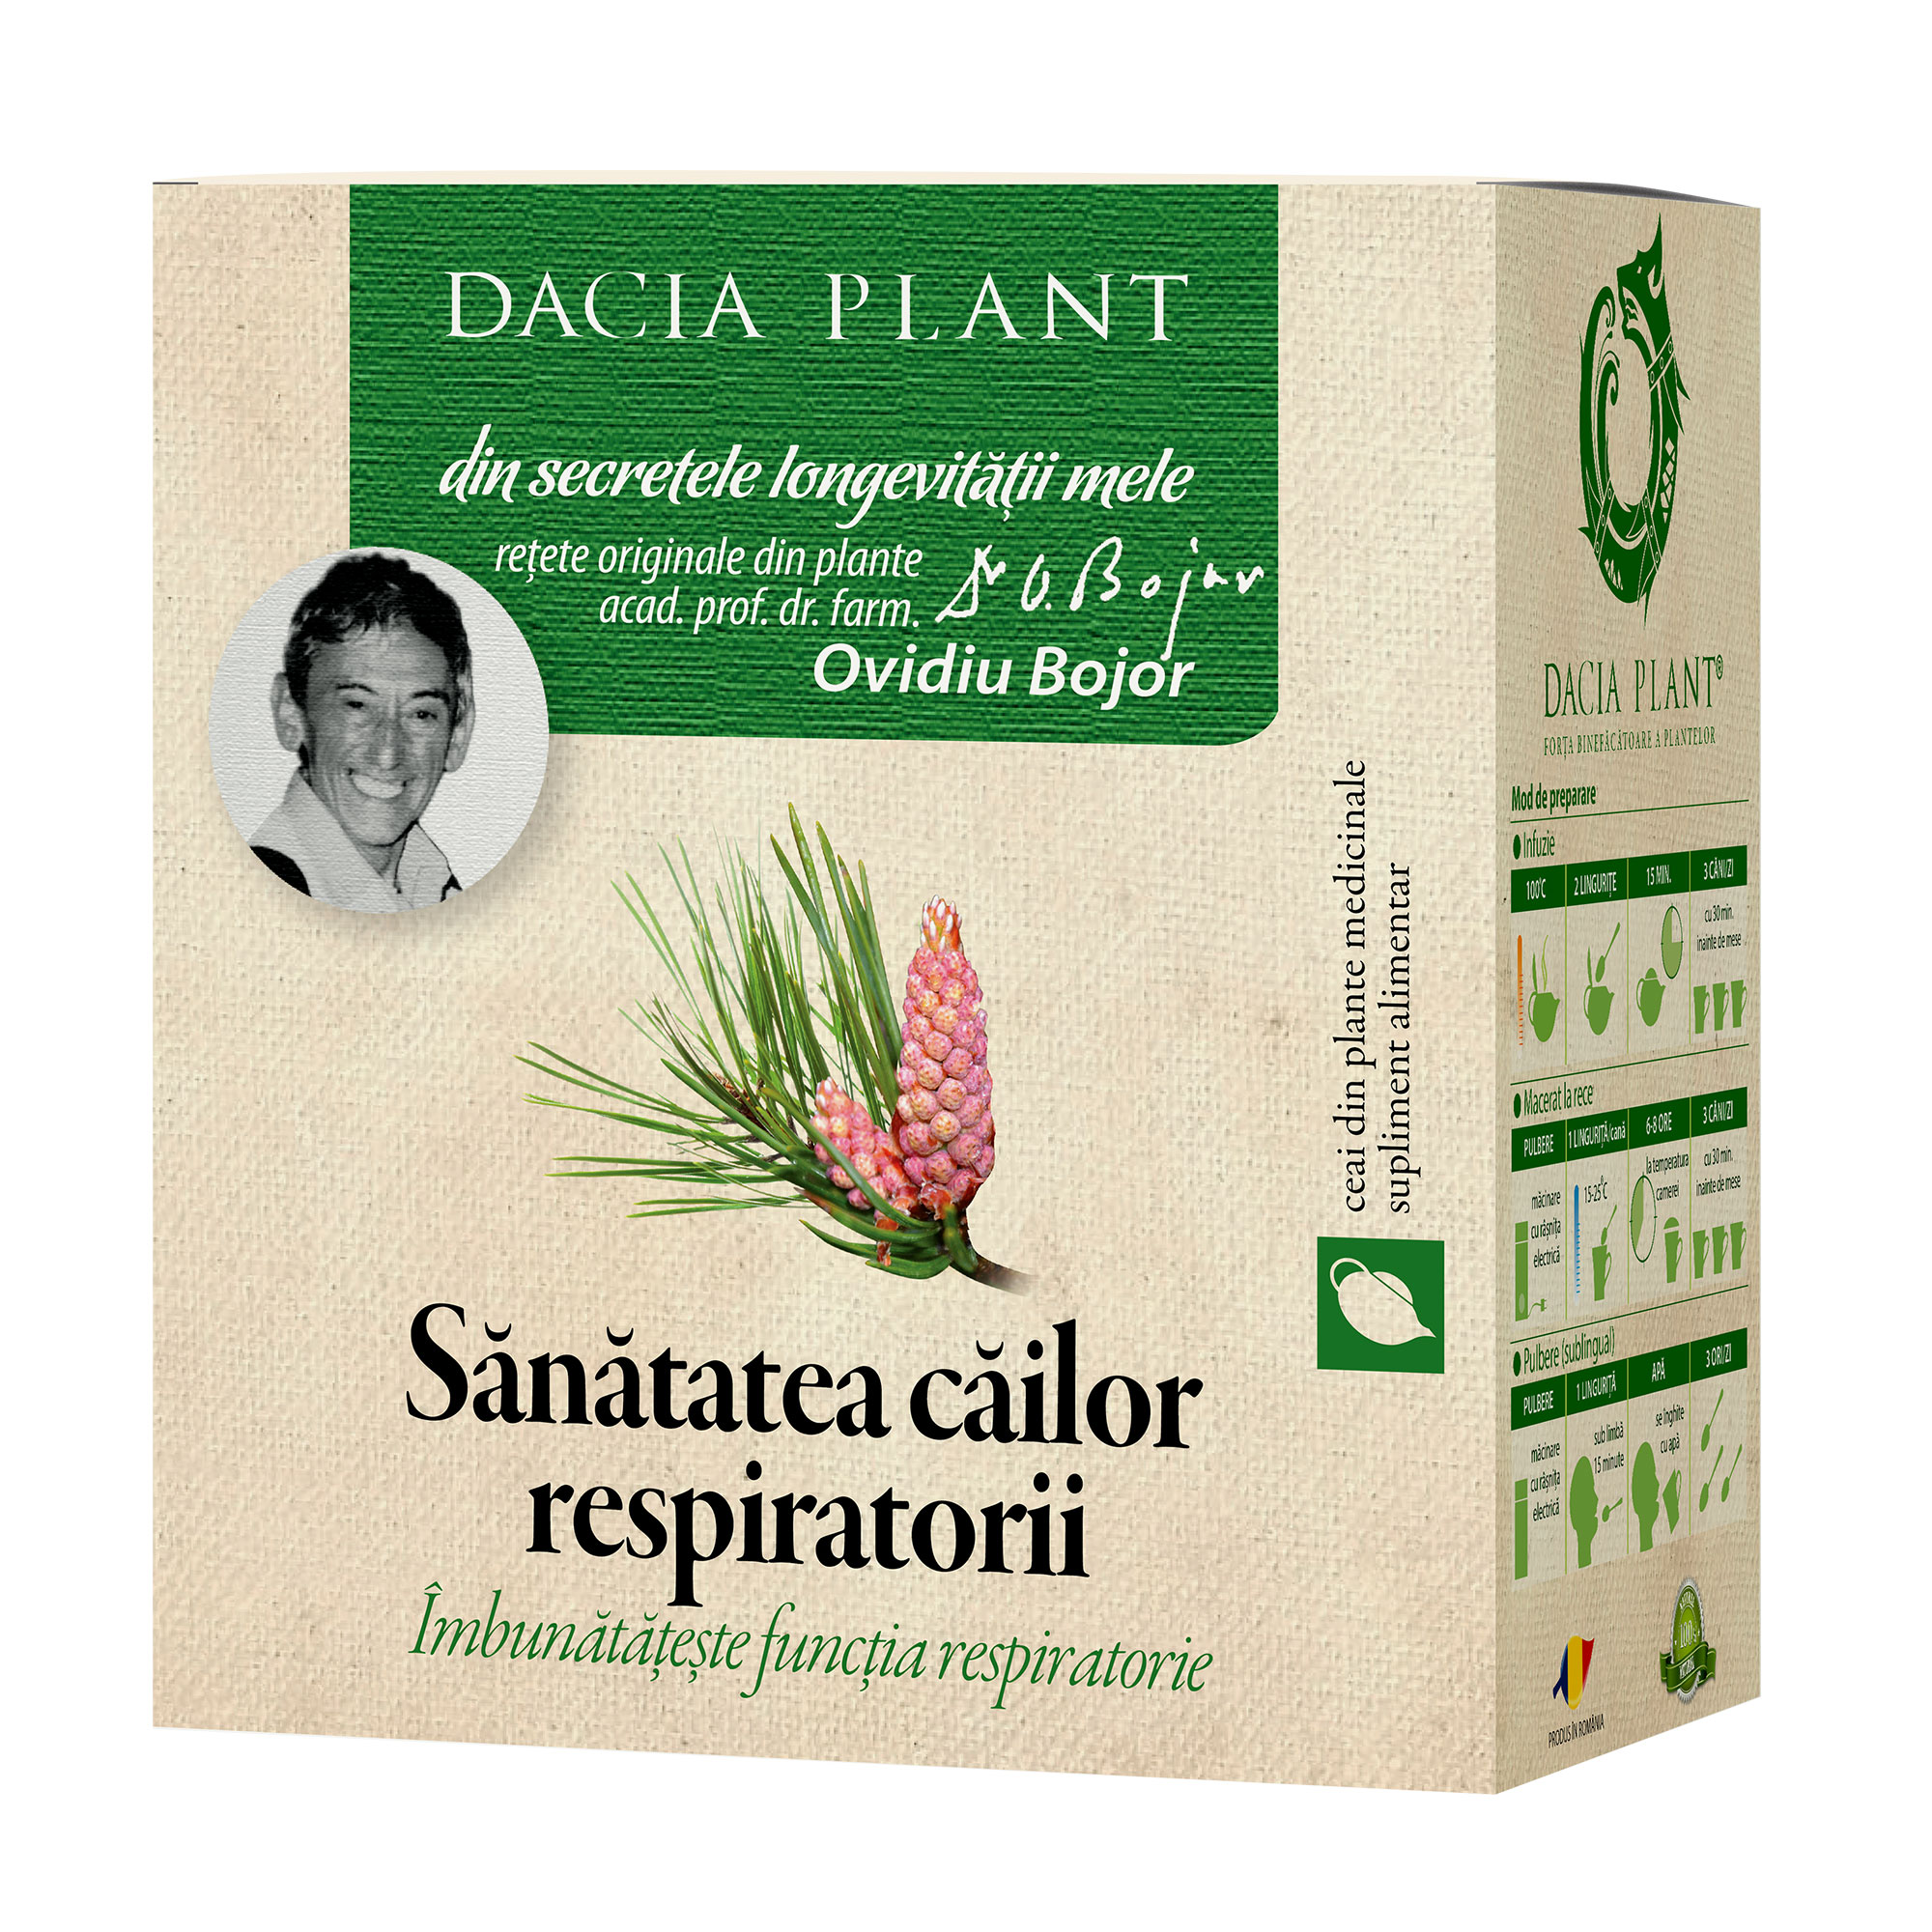 Ceai Sănătatea Căilor respiratorii, Dacia Plant, 50 gr